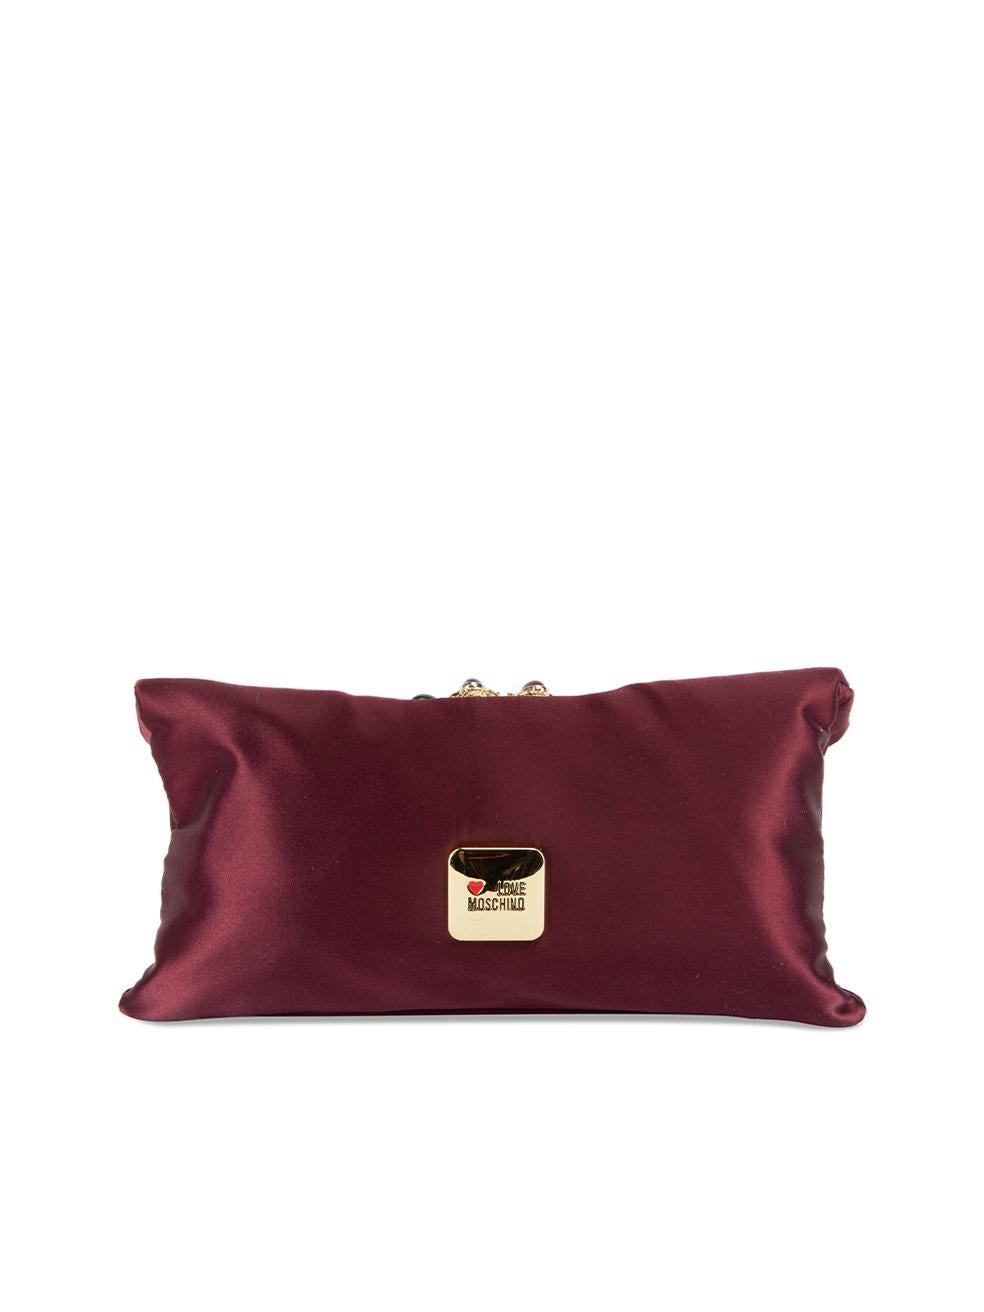 burgundy evening bag